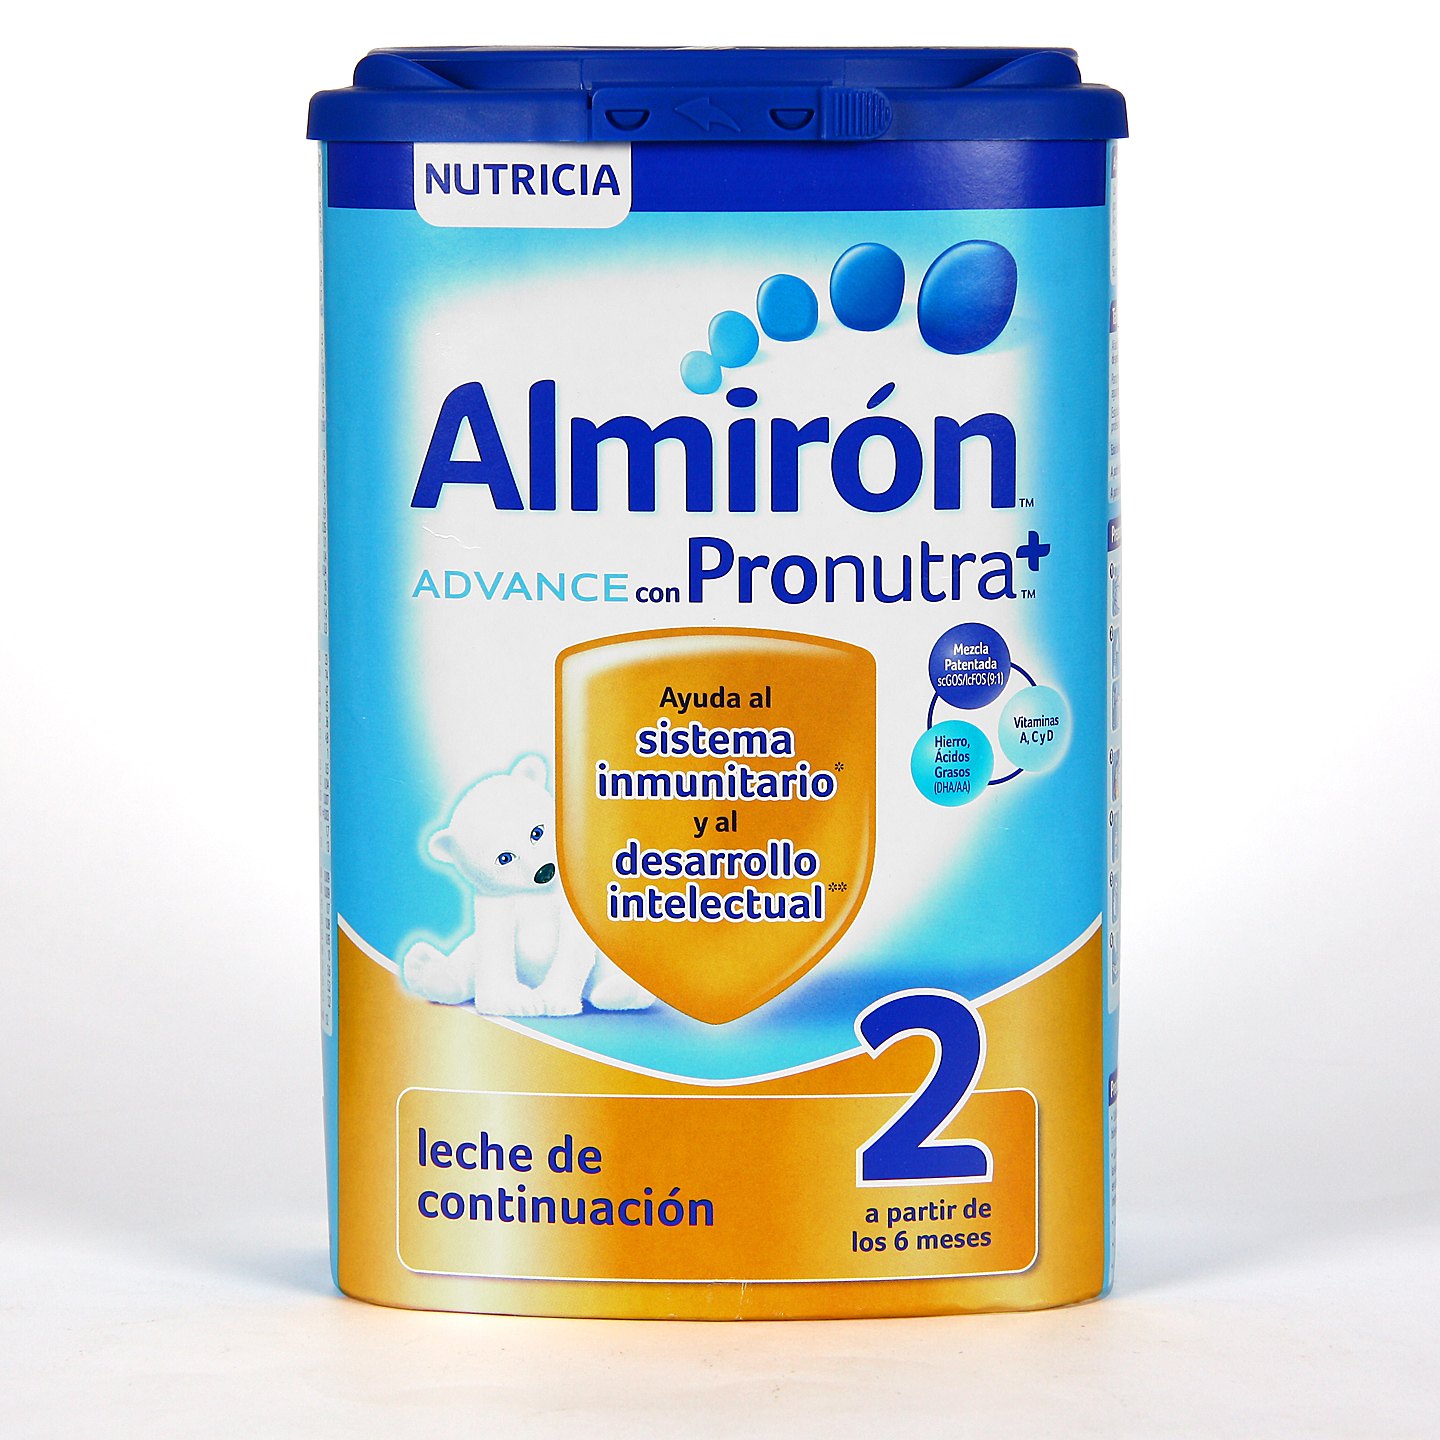 Almirón Advance 2 + almirón multicereales de regalo #almiron #ahorro  #lactante #leche